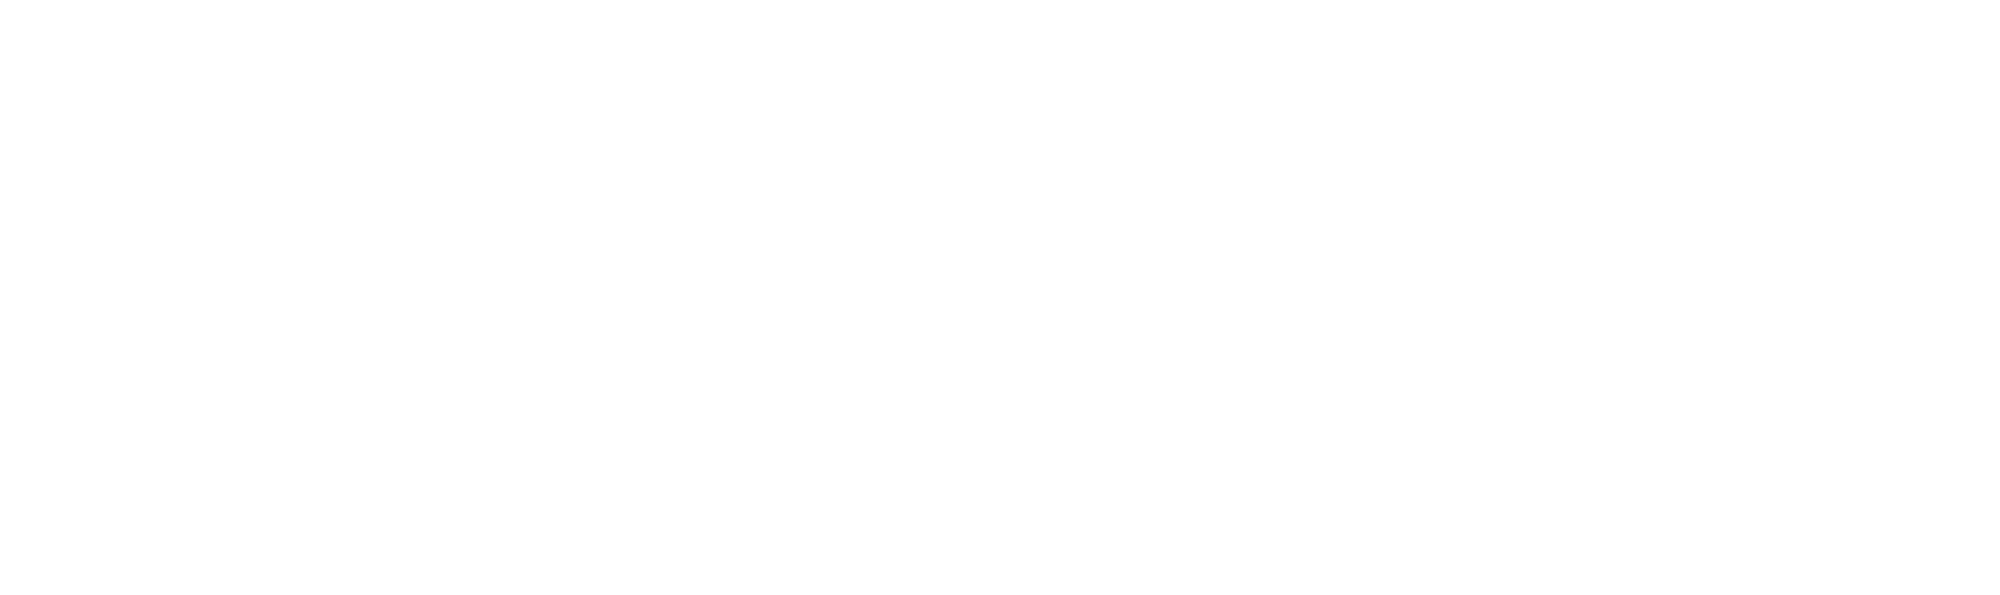 Zloty i festiwale motocyklowe